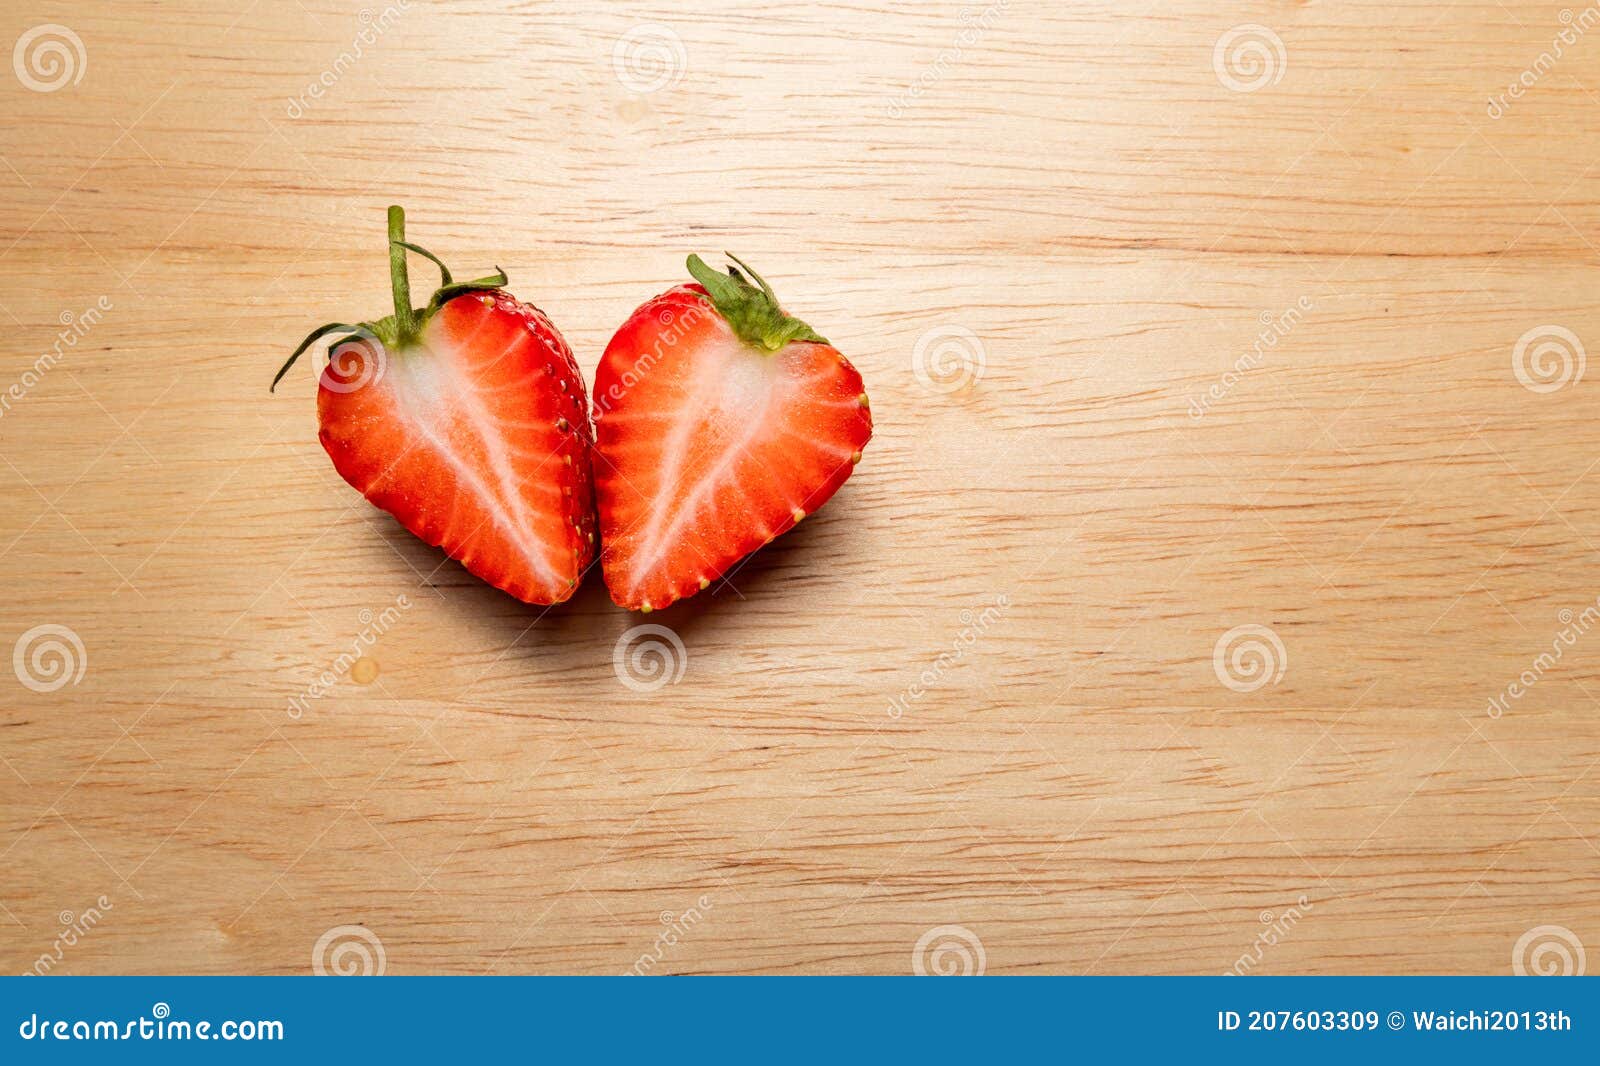 https://thumbs.dreamstime.com/z/fraises-fra%C3%AEches-sur-la-planche-%C3%A0-d%C3%A9couper-en-bois-forme-de-coeur-fraise-fond-nourriture-v%C3%A9g%C3%A9tarien-l-espace-copie-concept-207603309.jpg